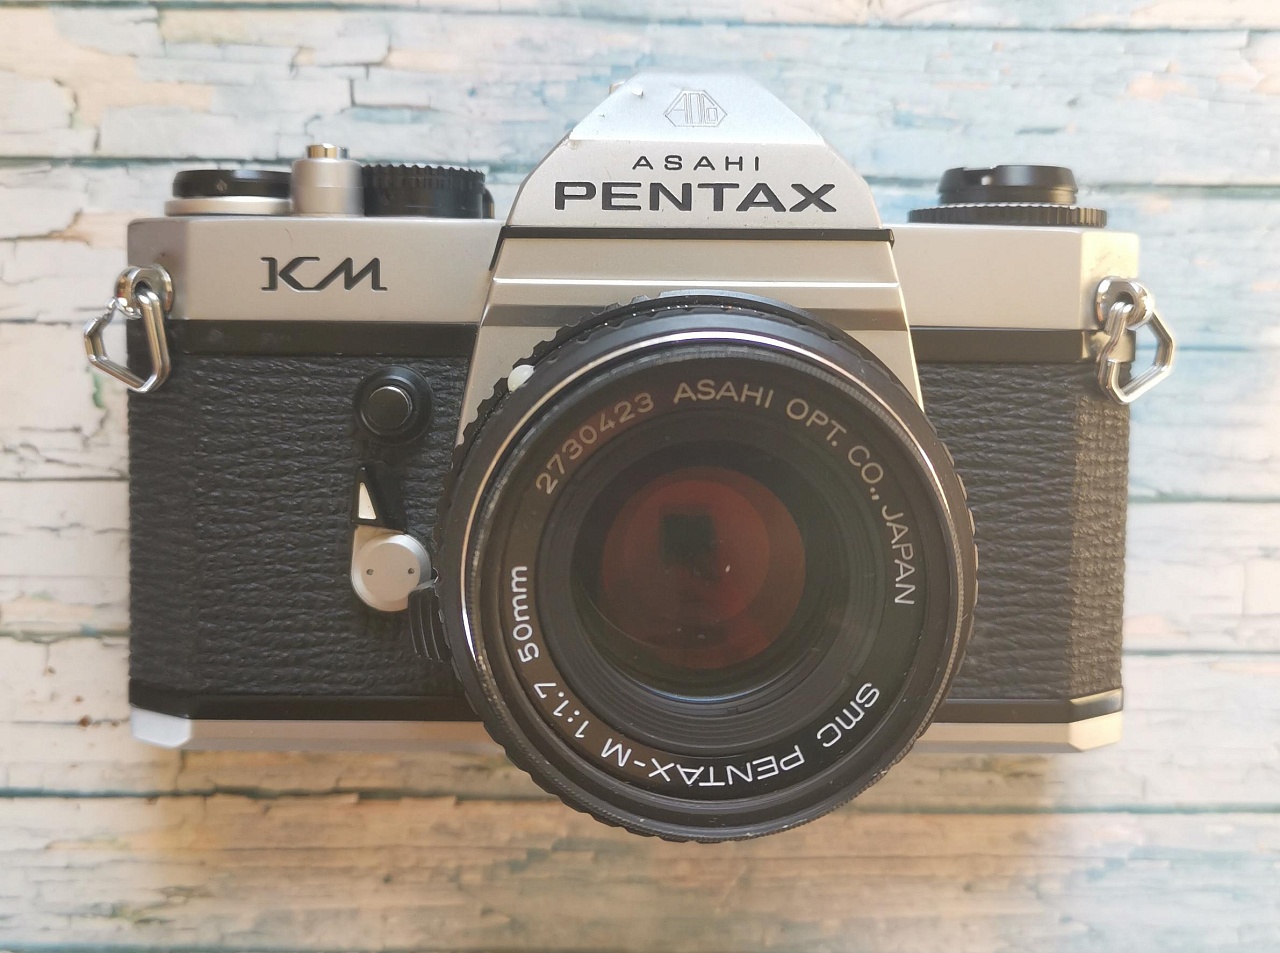 Pentax KM + SMC Pentax-M 50 mm f/1.7 фото №1